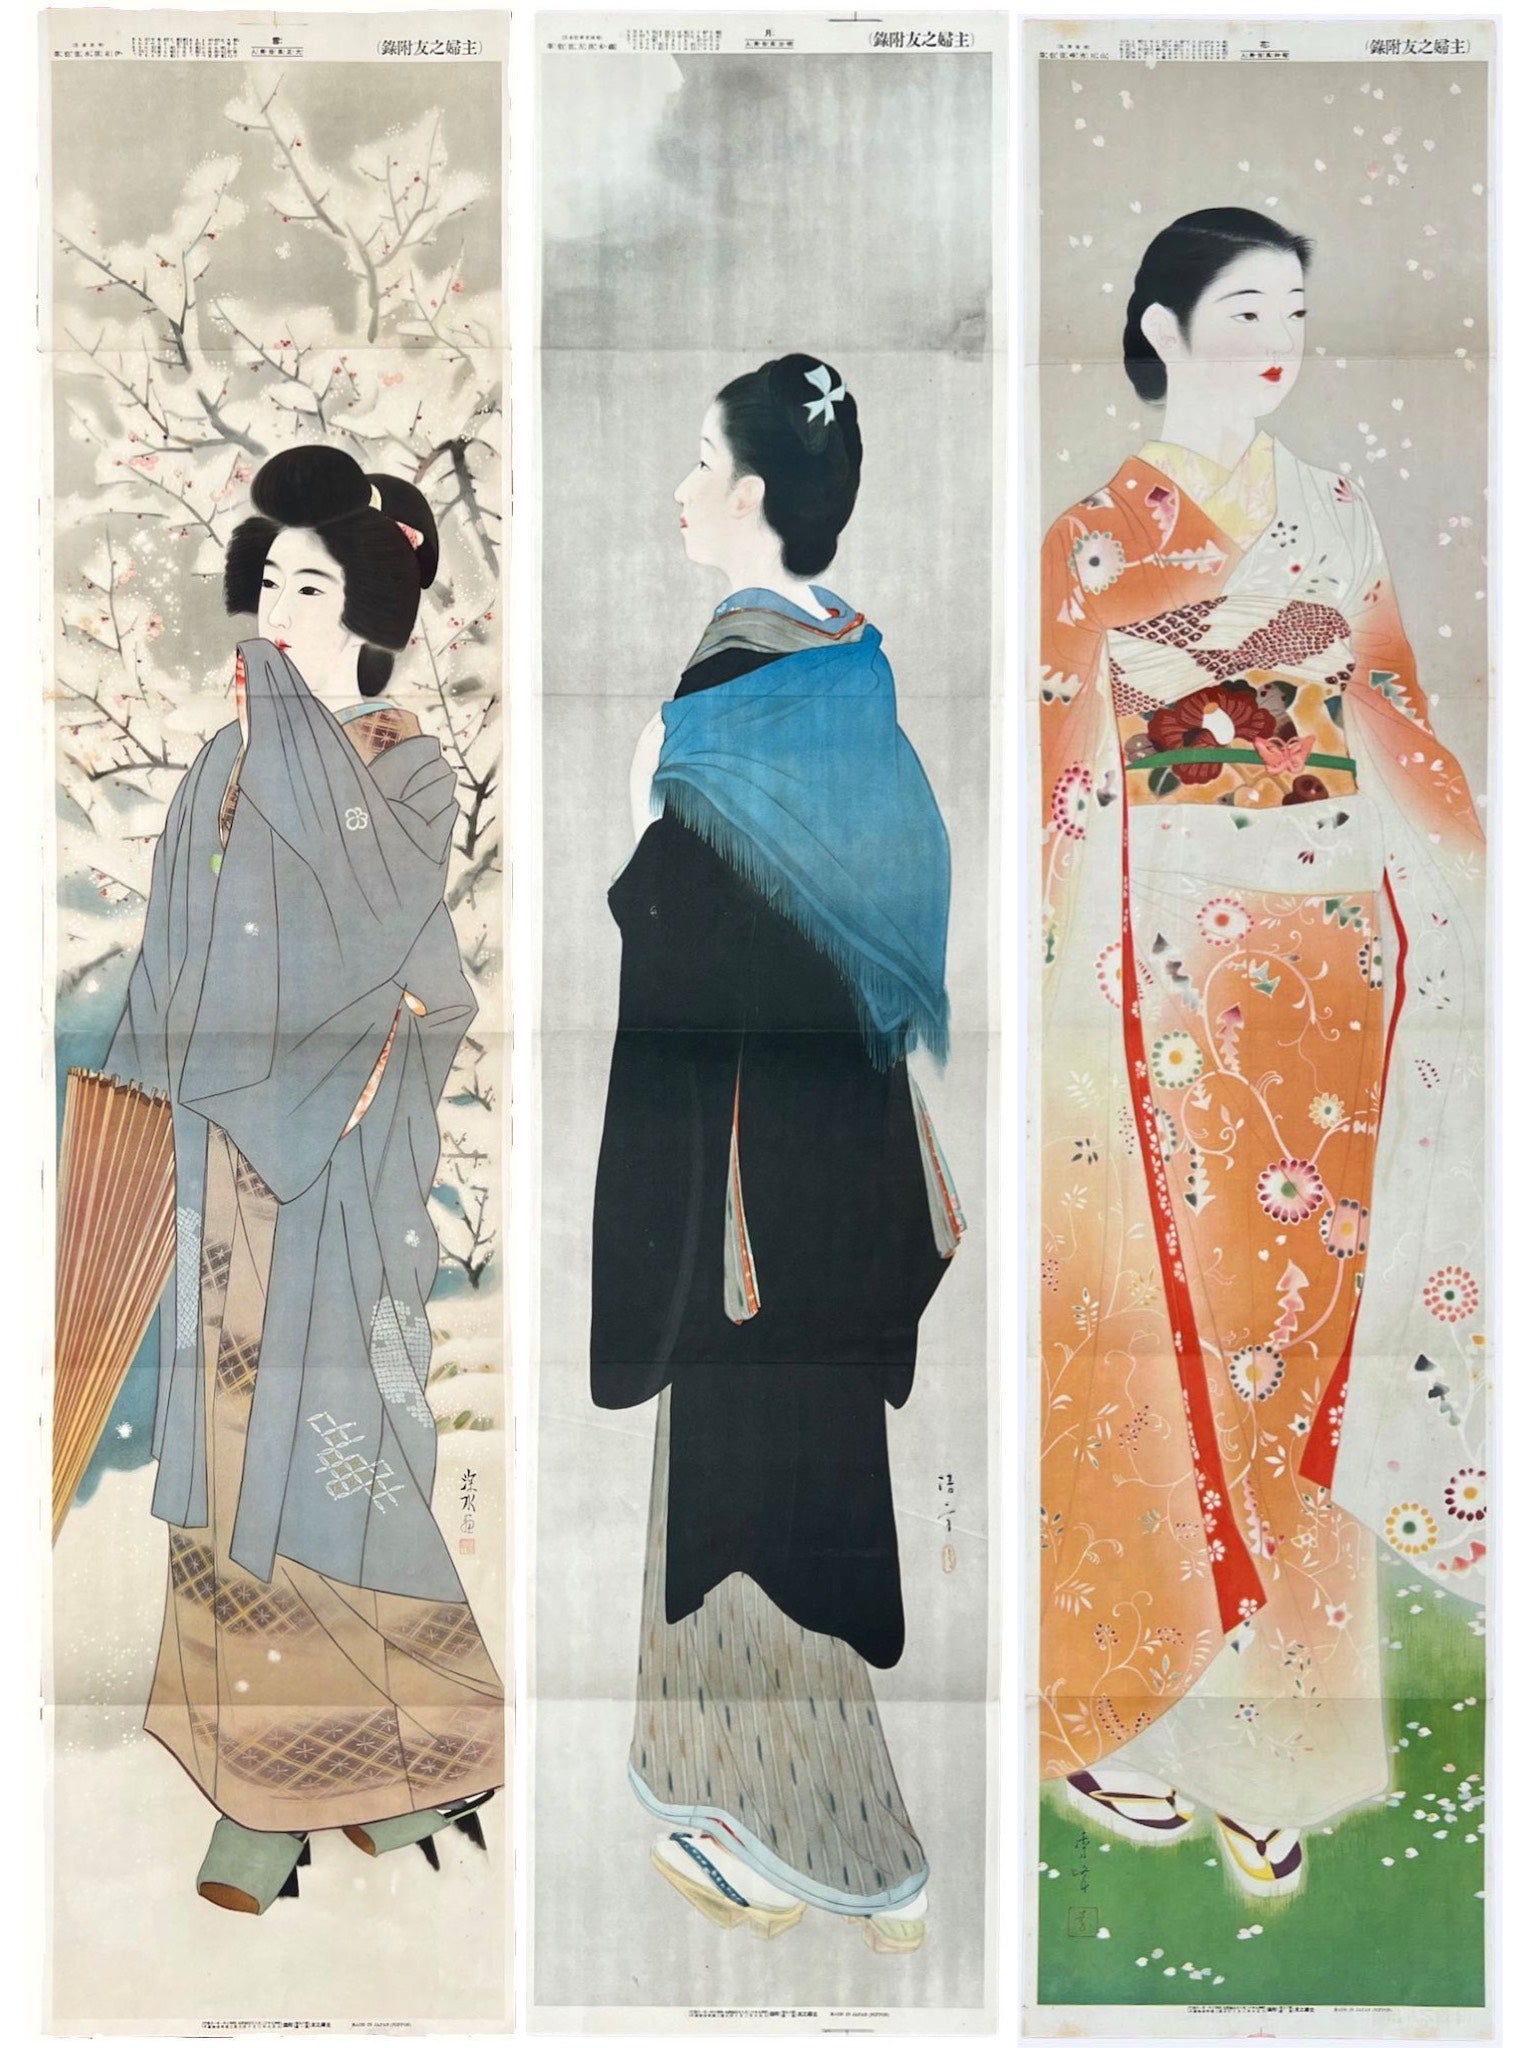 estampe japonaise série de 3 estampes des femmes en long kimono, l'une représentant la fleur, la deuxième la neige, la troisième la lune